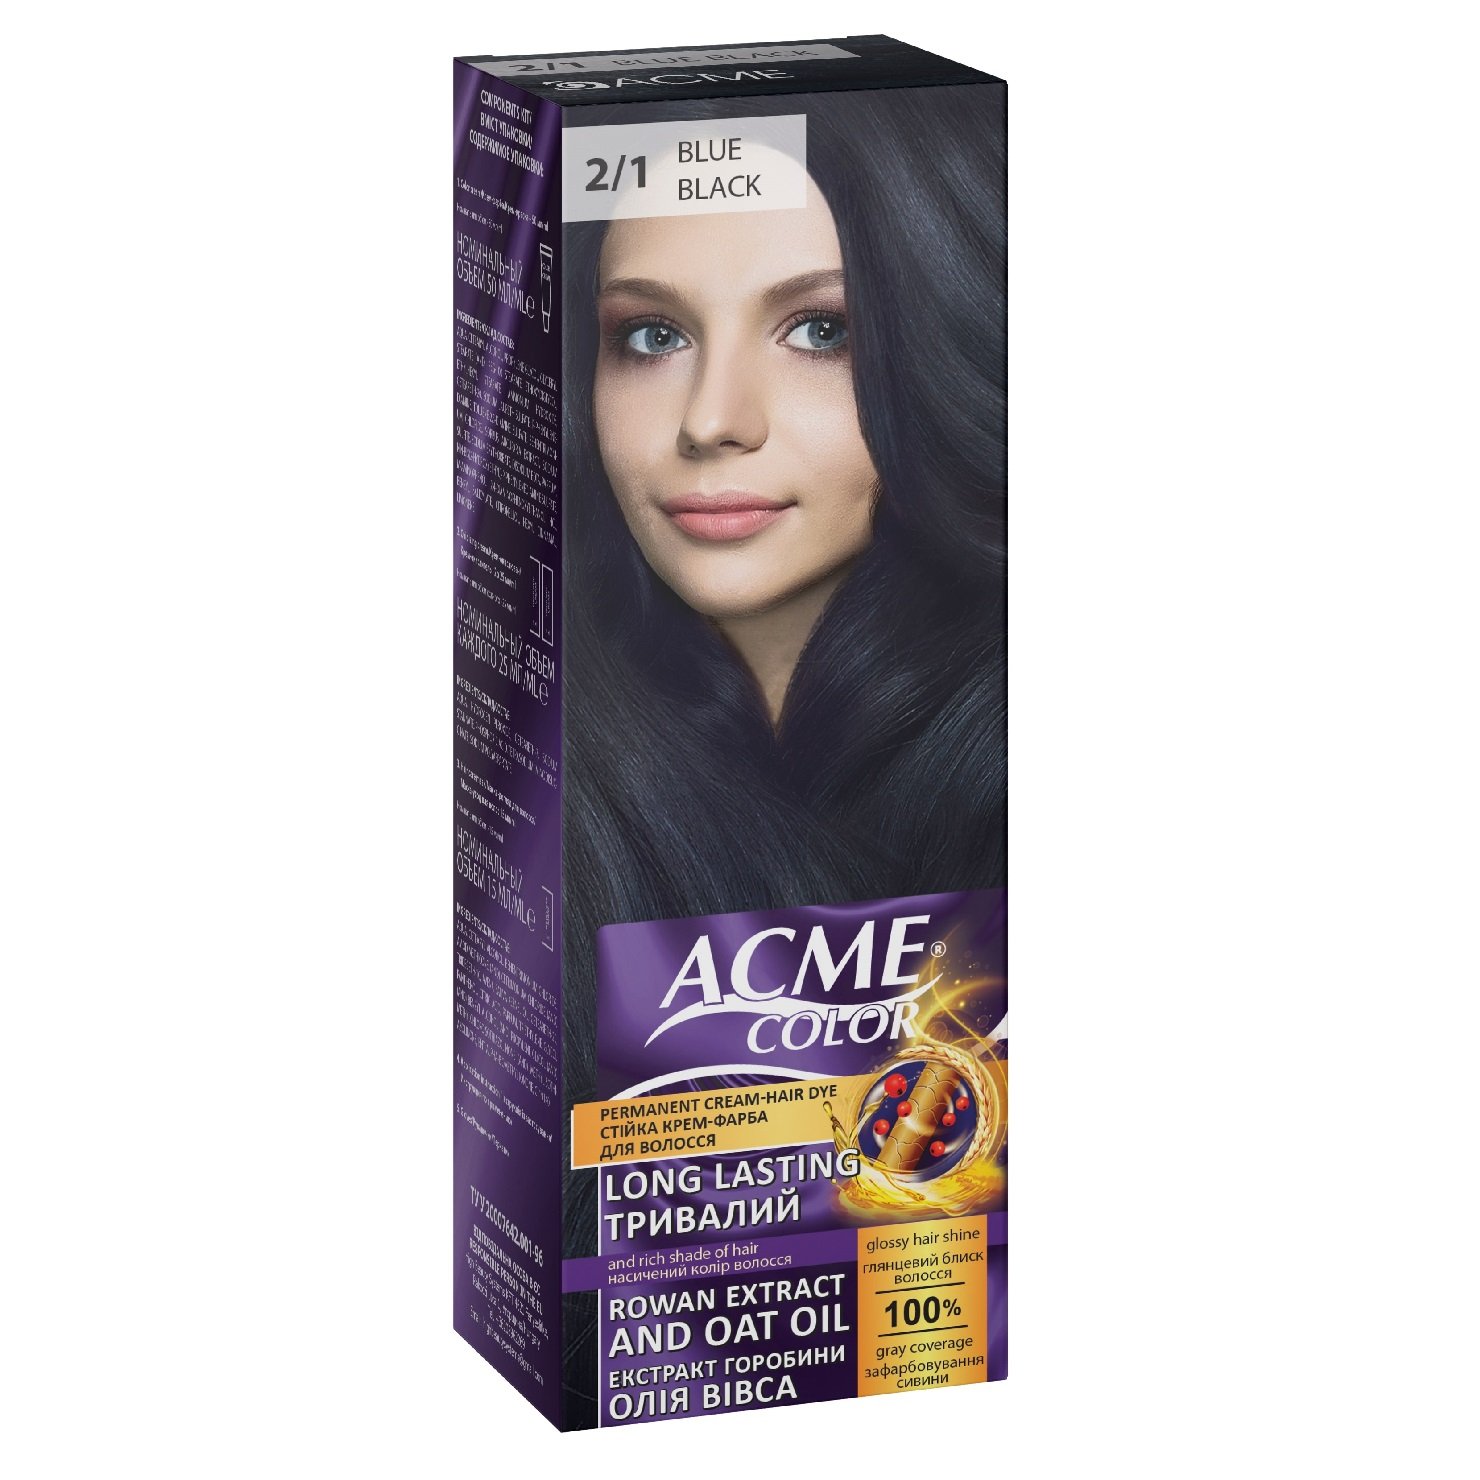 Крем-фарба для волосся Acme Color EXP, відтінок 2/1 (Синьо-чорний), 115 мл - фото 1